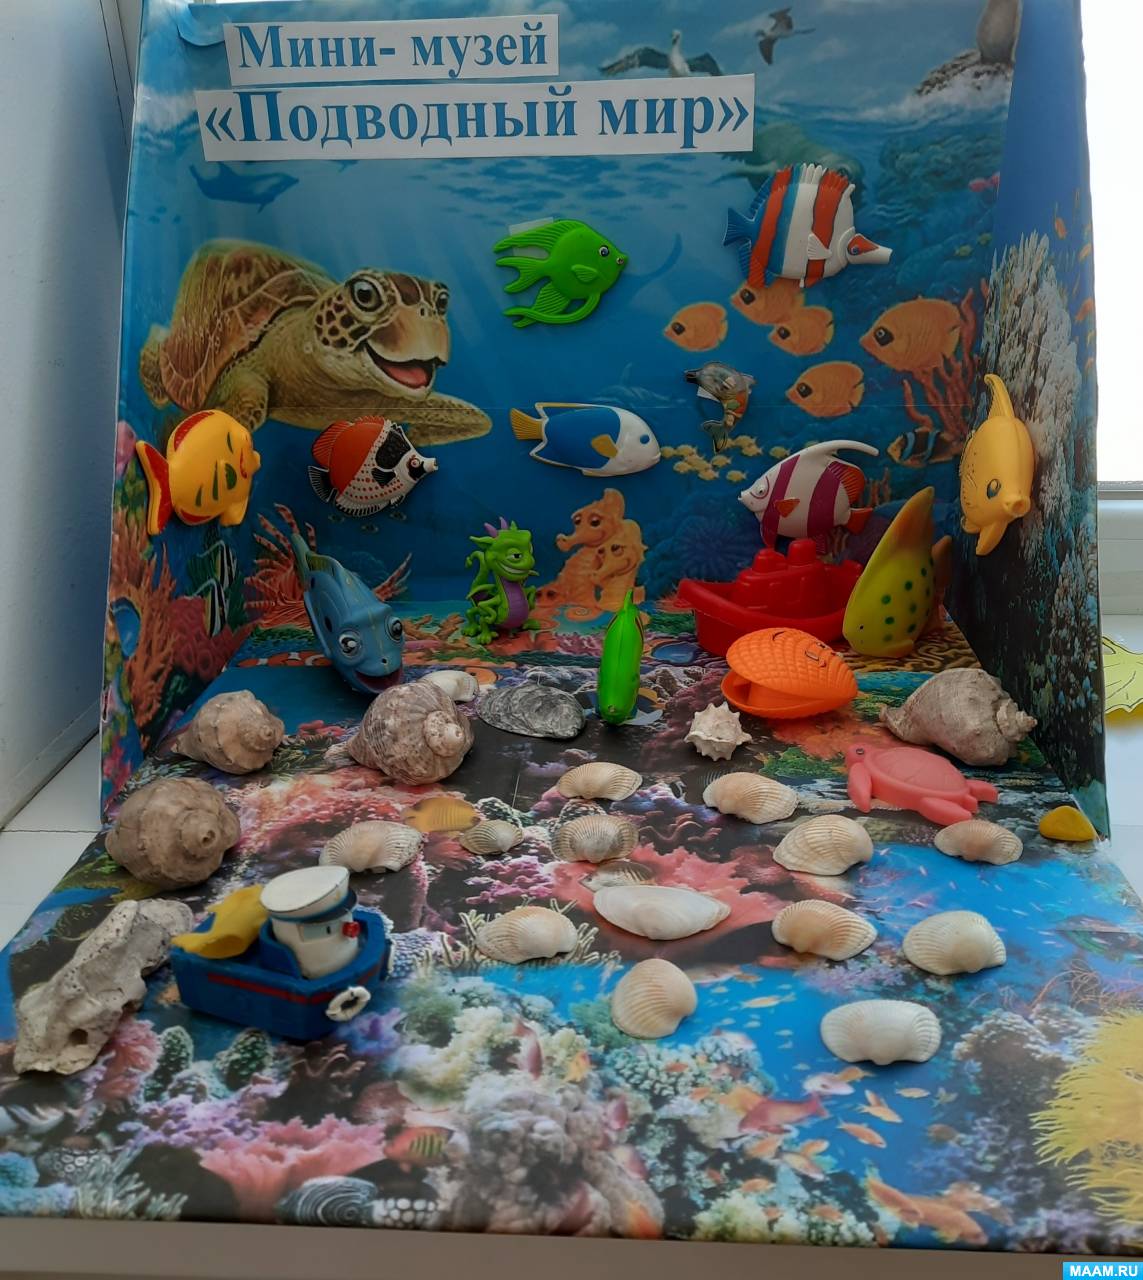 Мини-музей «Подводный мир»